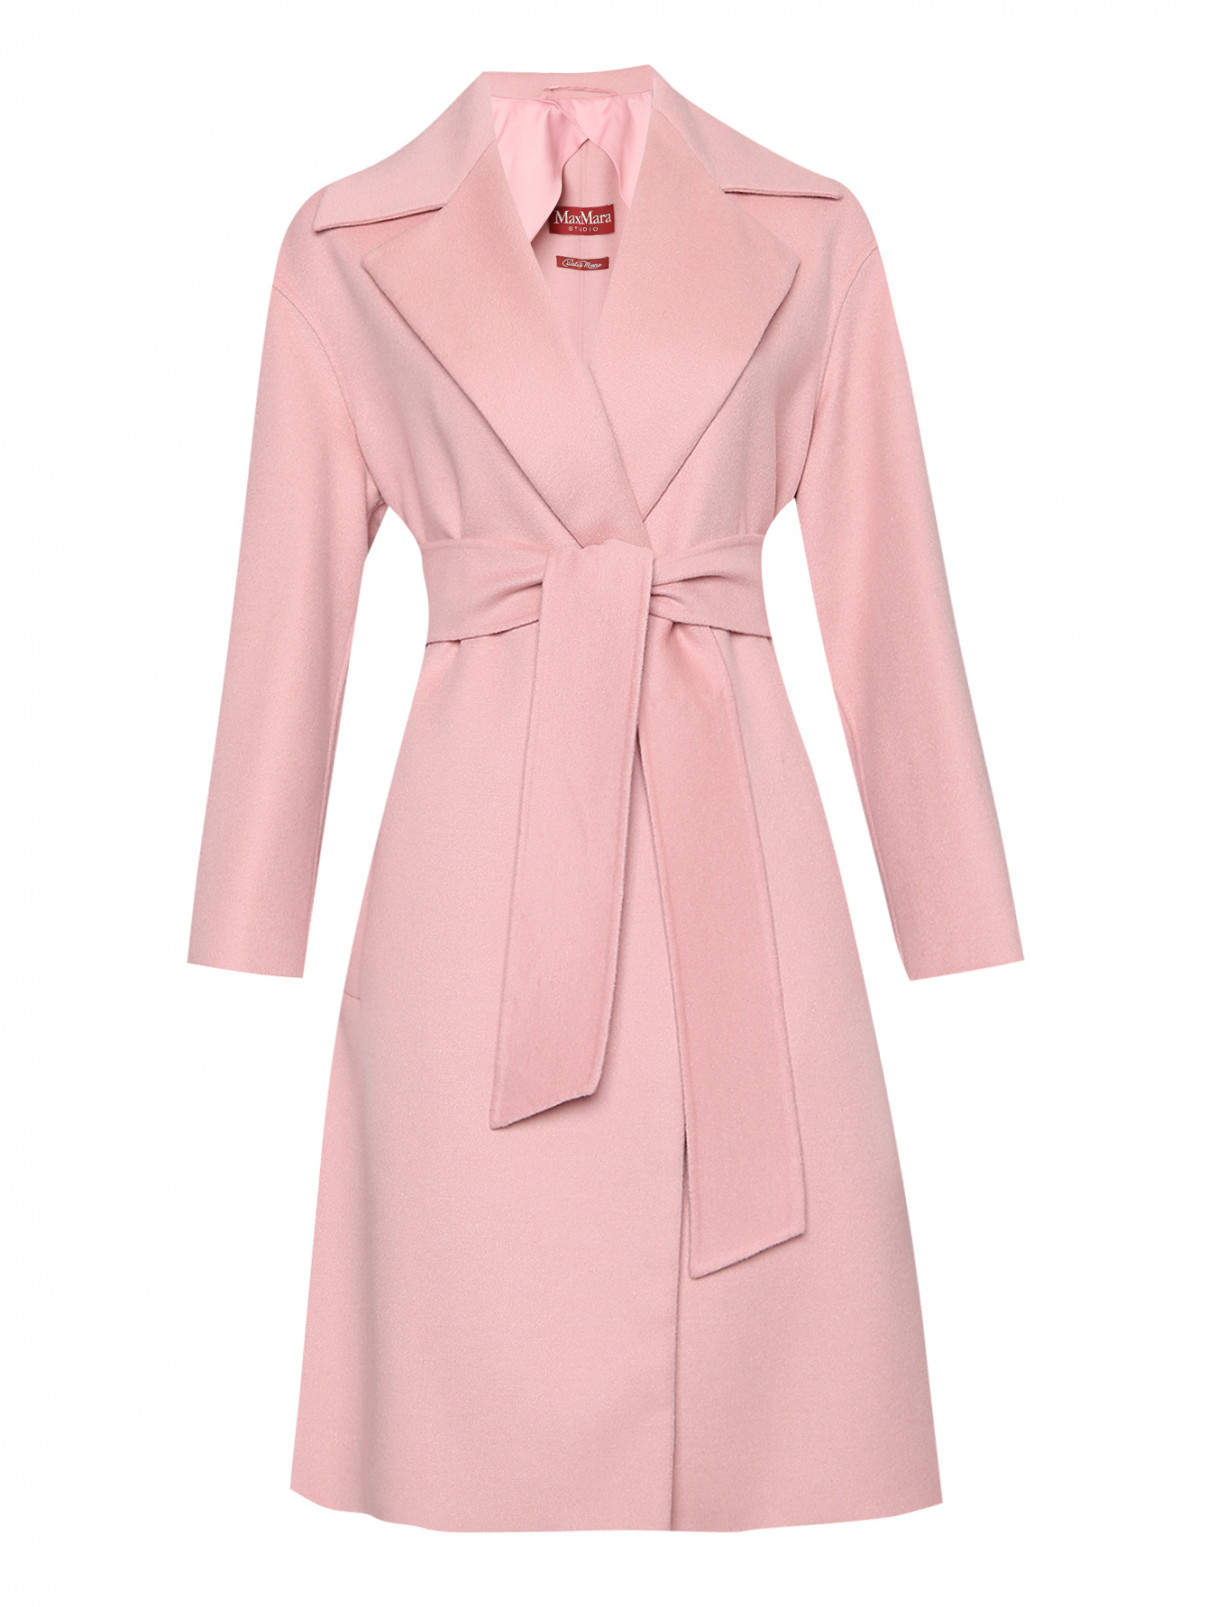 Пальто из шерсти с карманами Max Mara  –  Общий вид  – Цвет:  Розовый